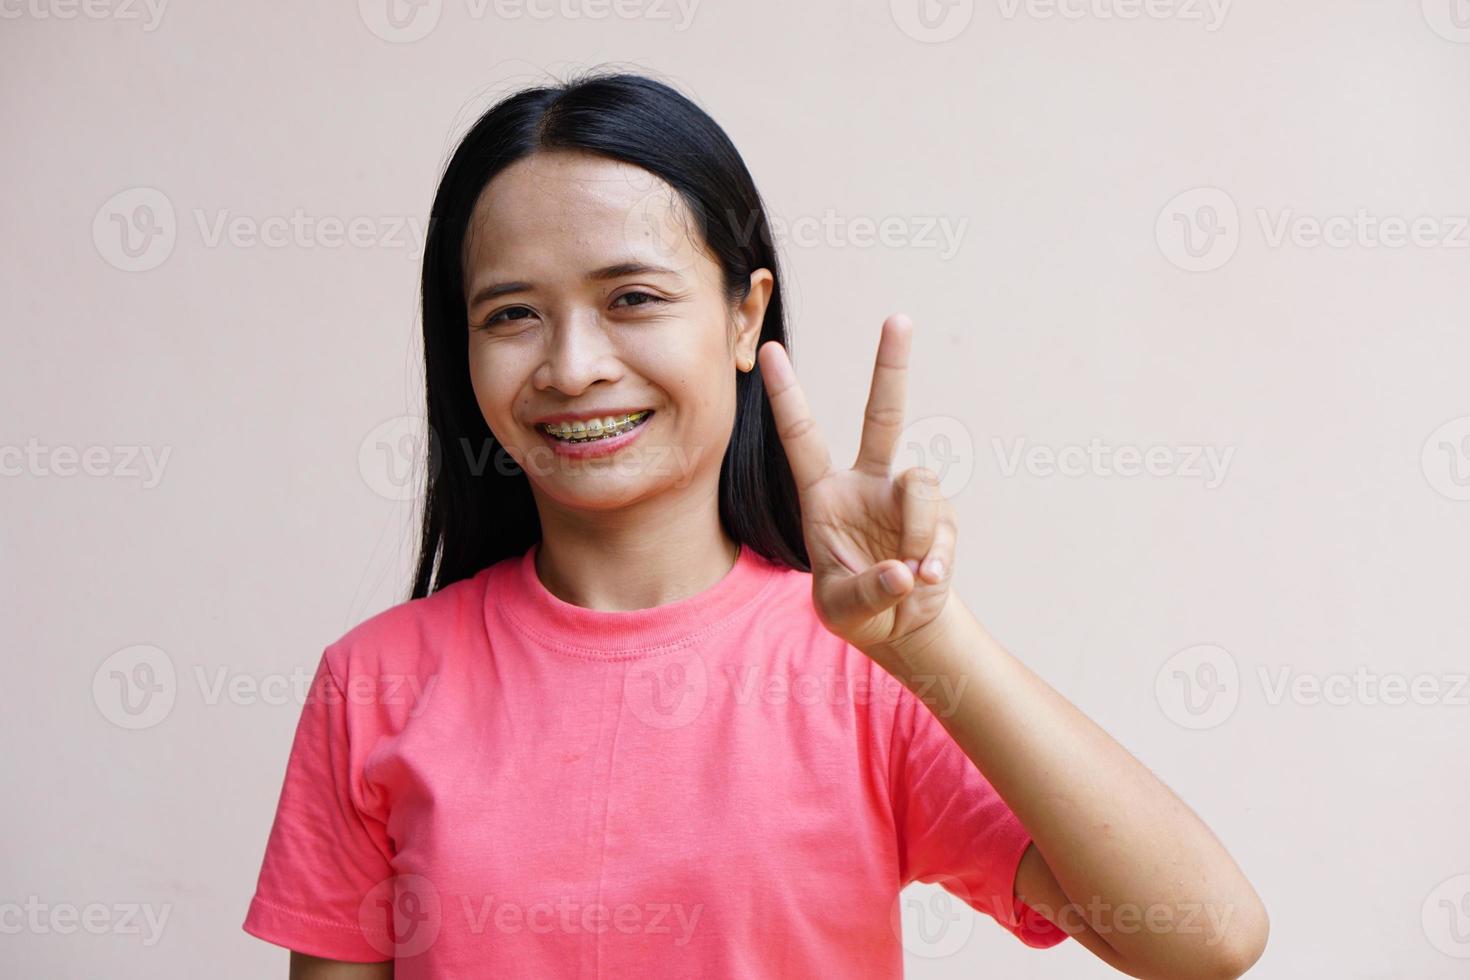 aziatische vrouw die twee vingers ophoudt, betekent vechten foto